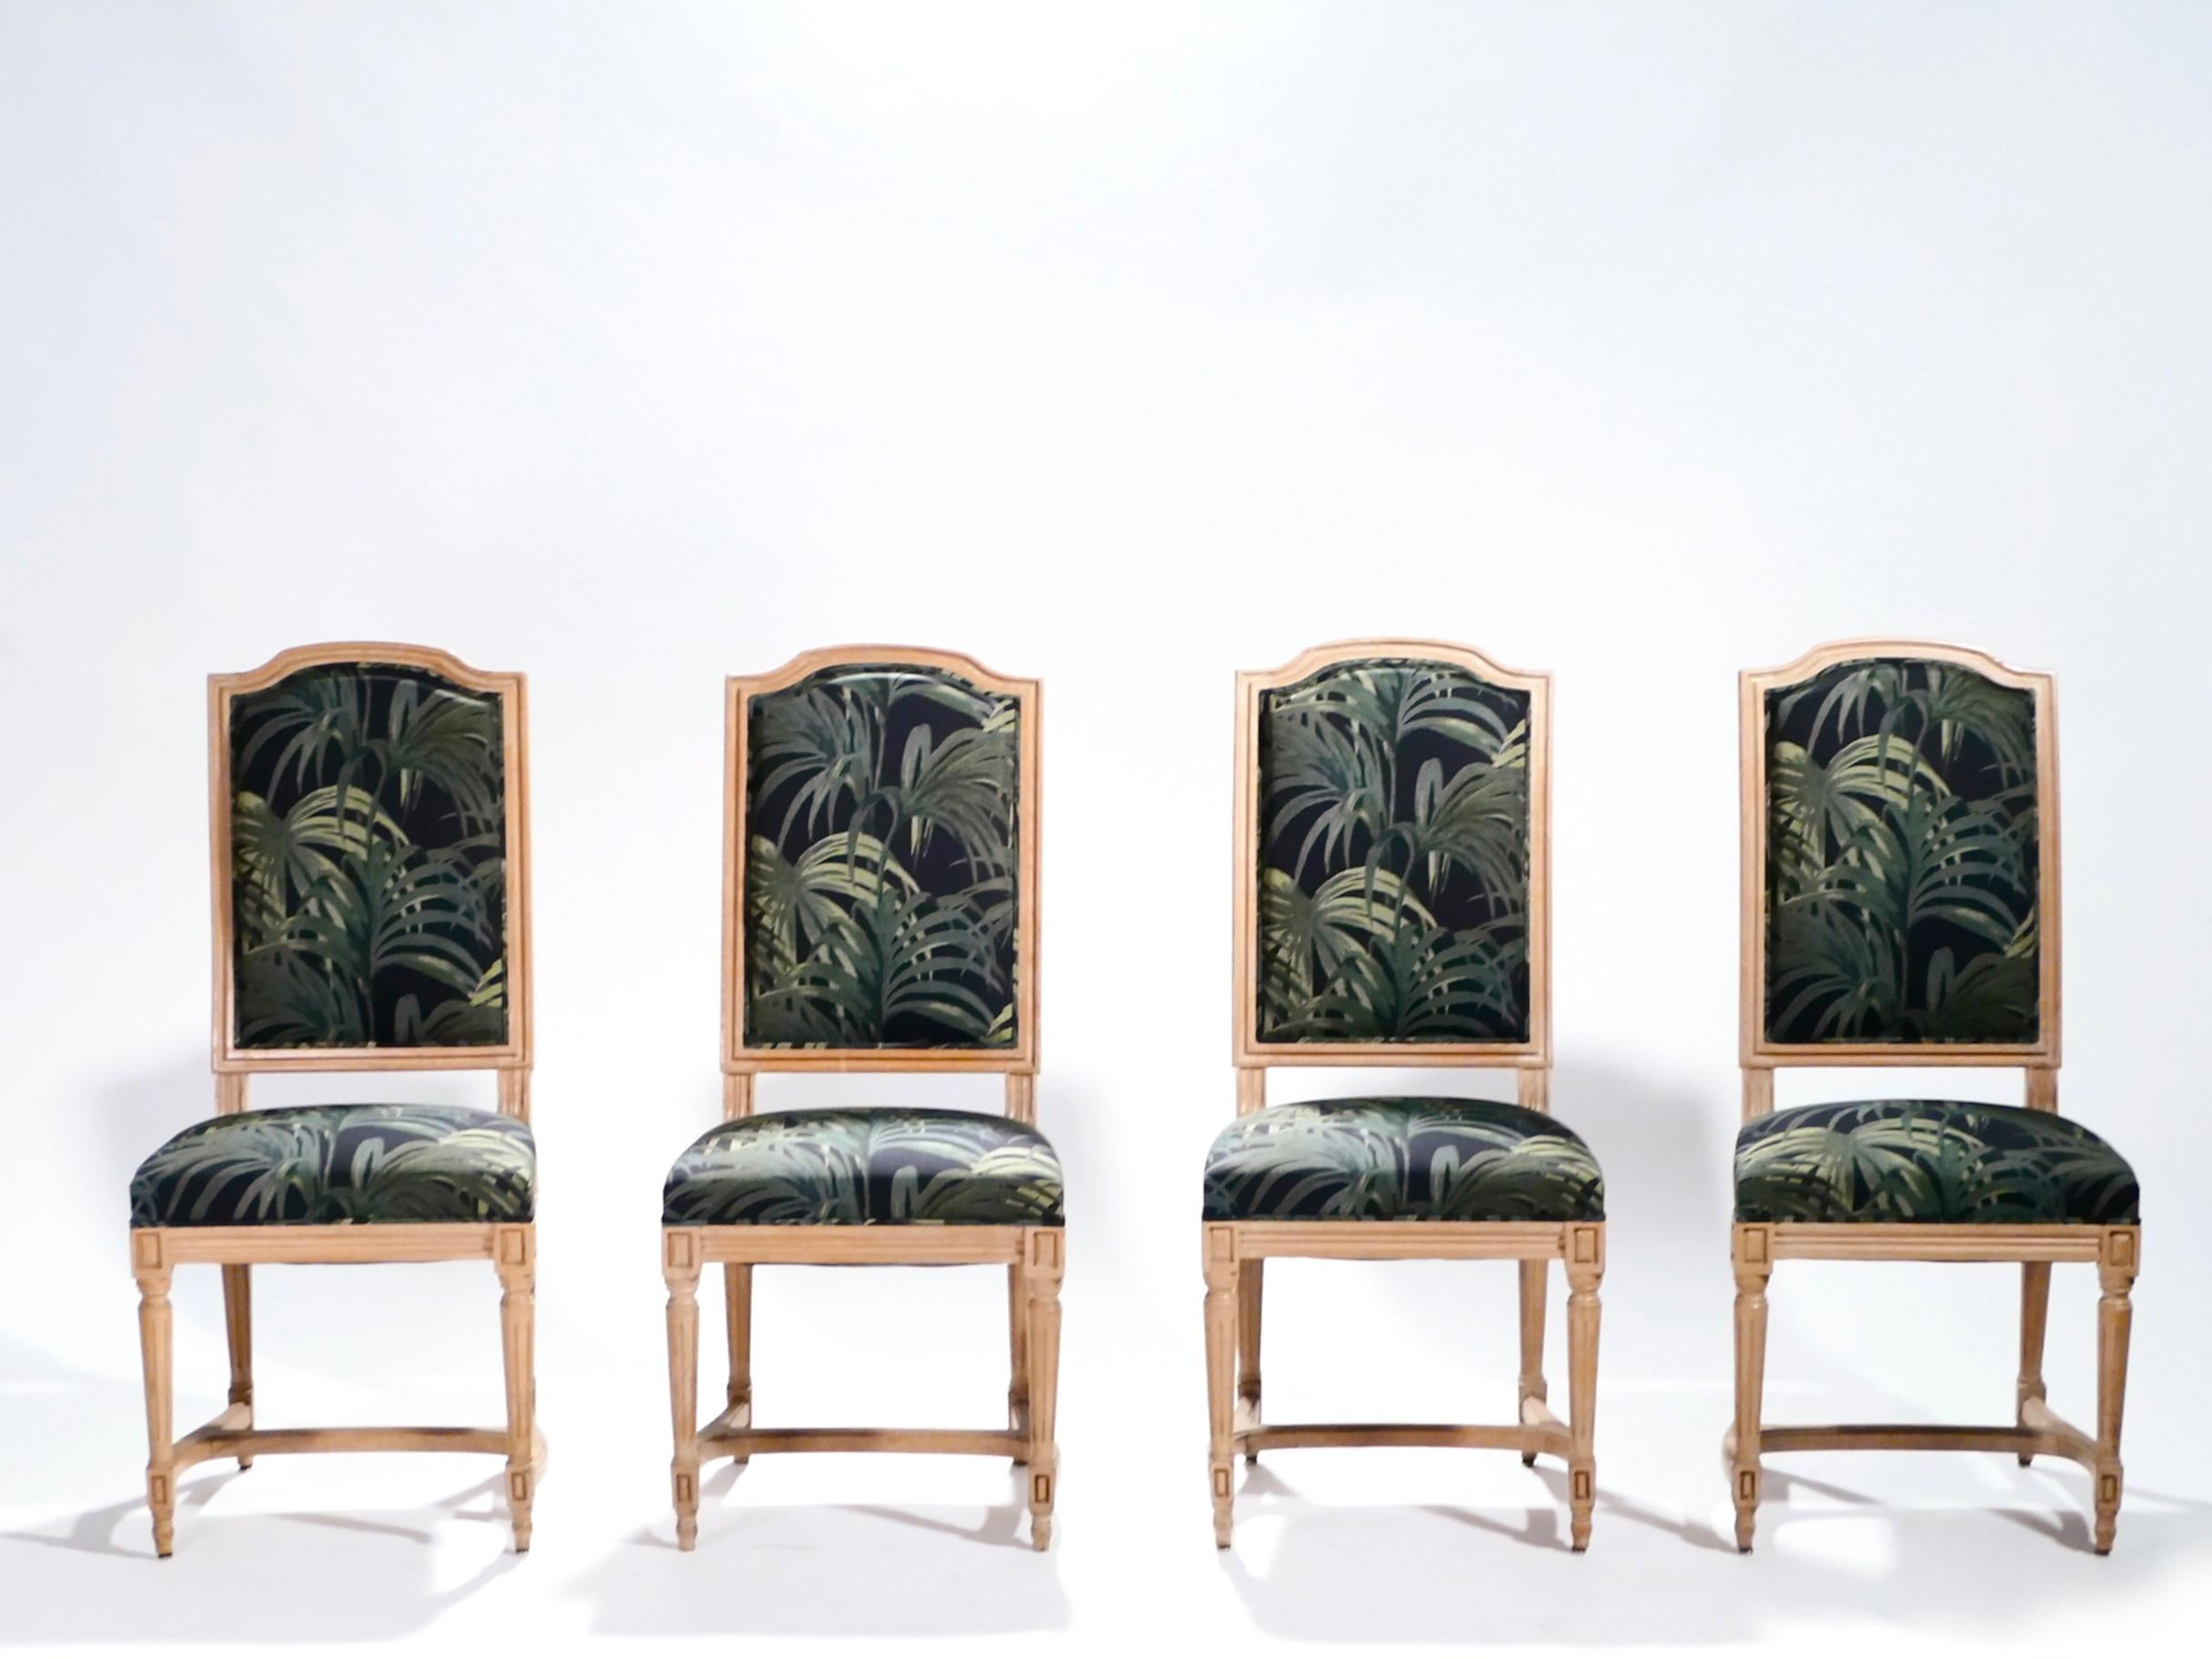 La nouvelle tapisserie colorée contraste avec le magnifique chêne ancien de ces chaises. La belle patine des pieds et de la structure en chêne suffit à évoquer le demi-siècle d'histoire de cet ensemble. Le revêtement, dans un motif frais de palmiers